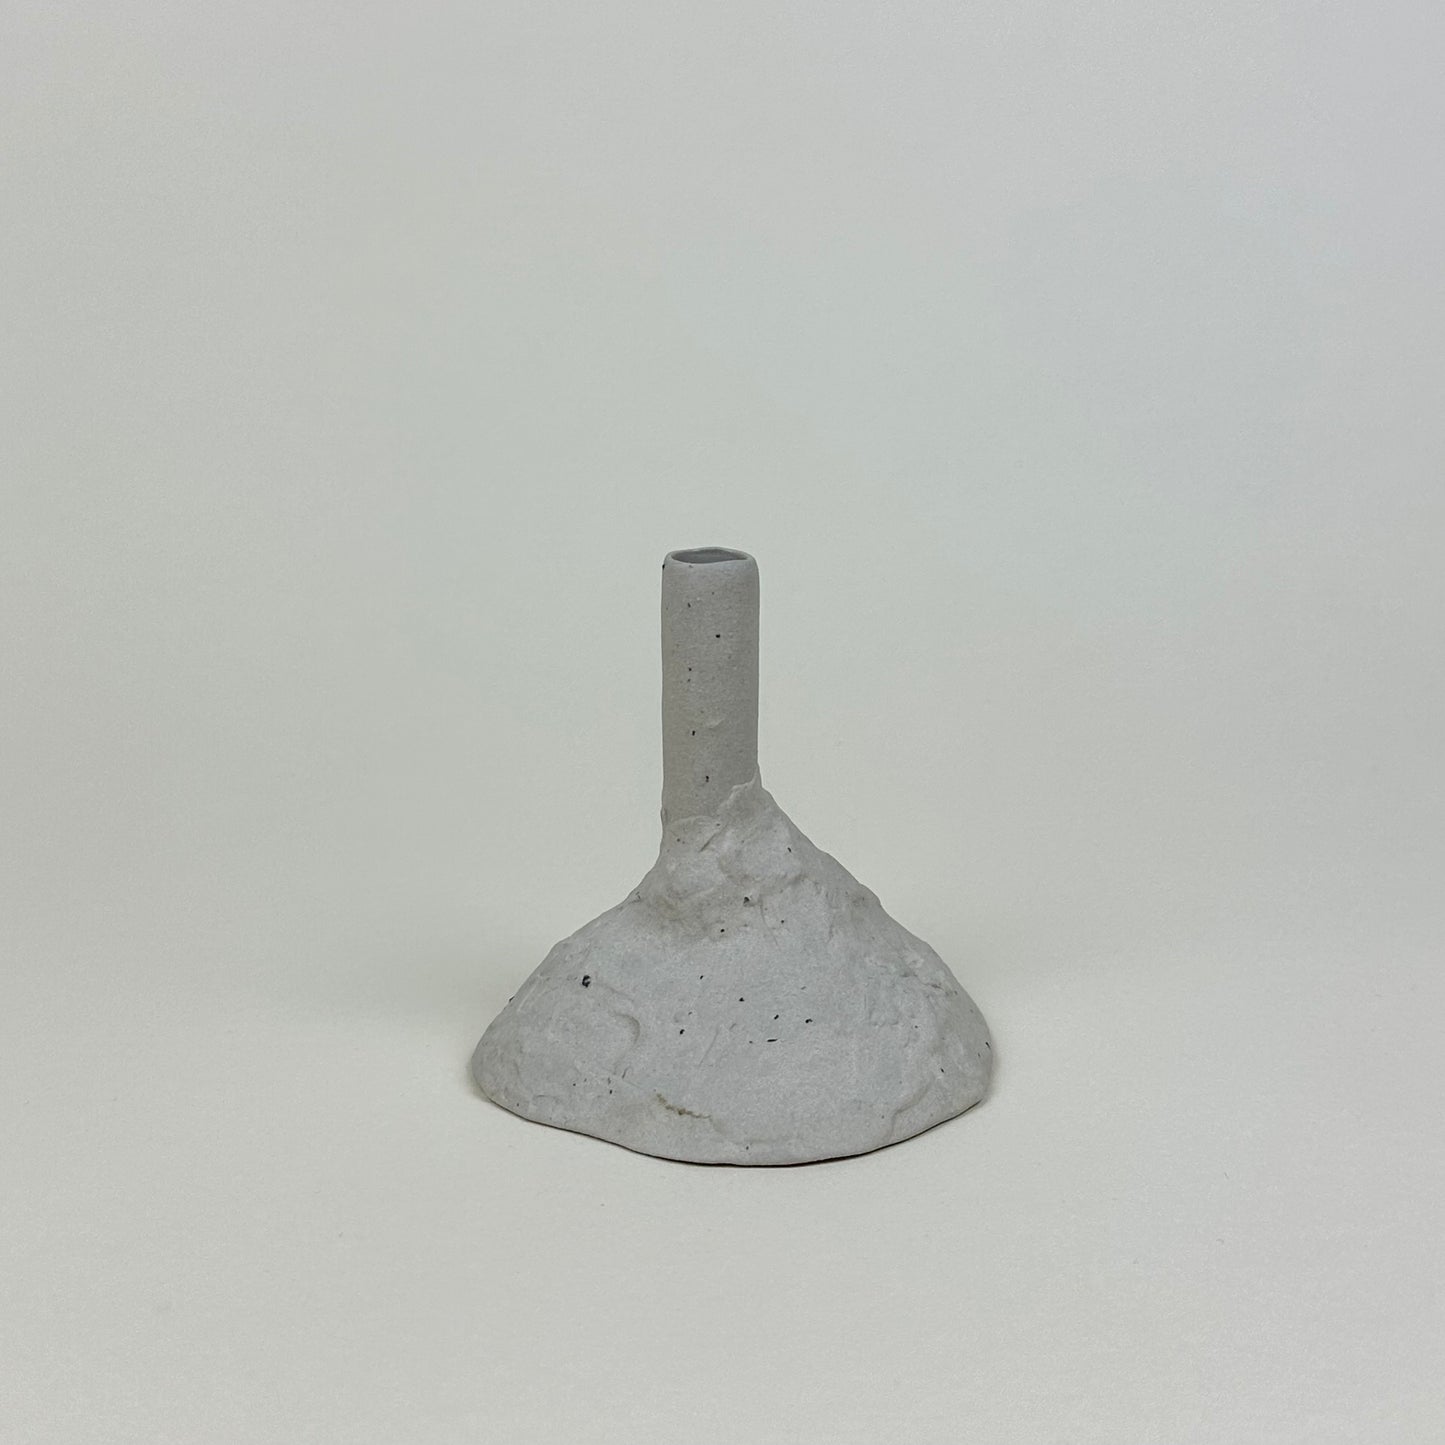 Small ceramic bud vase by Malwina Kleparska, bone white